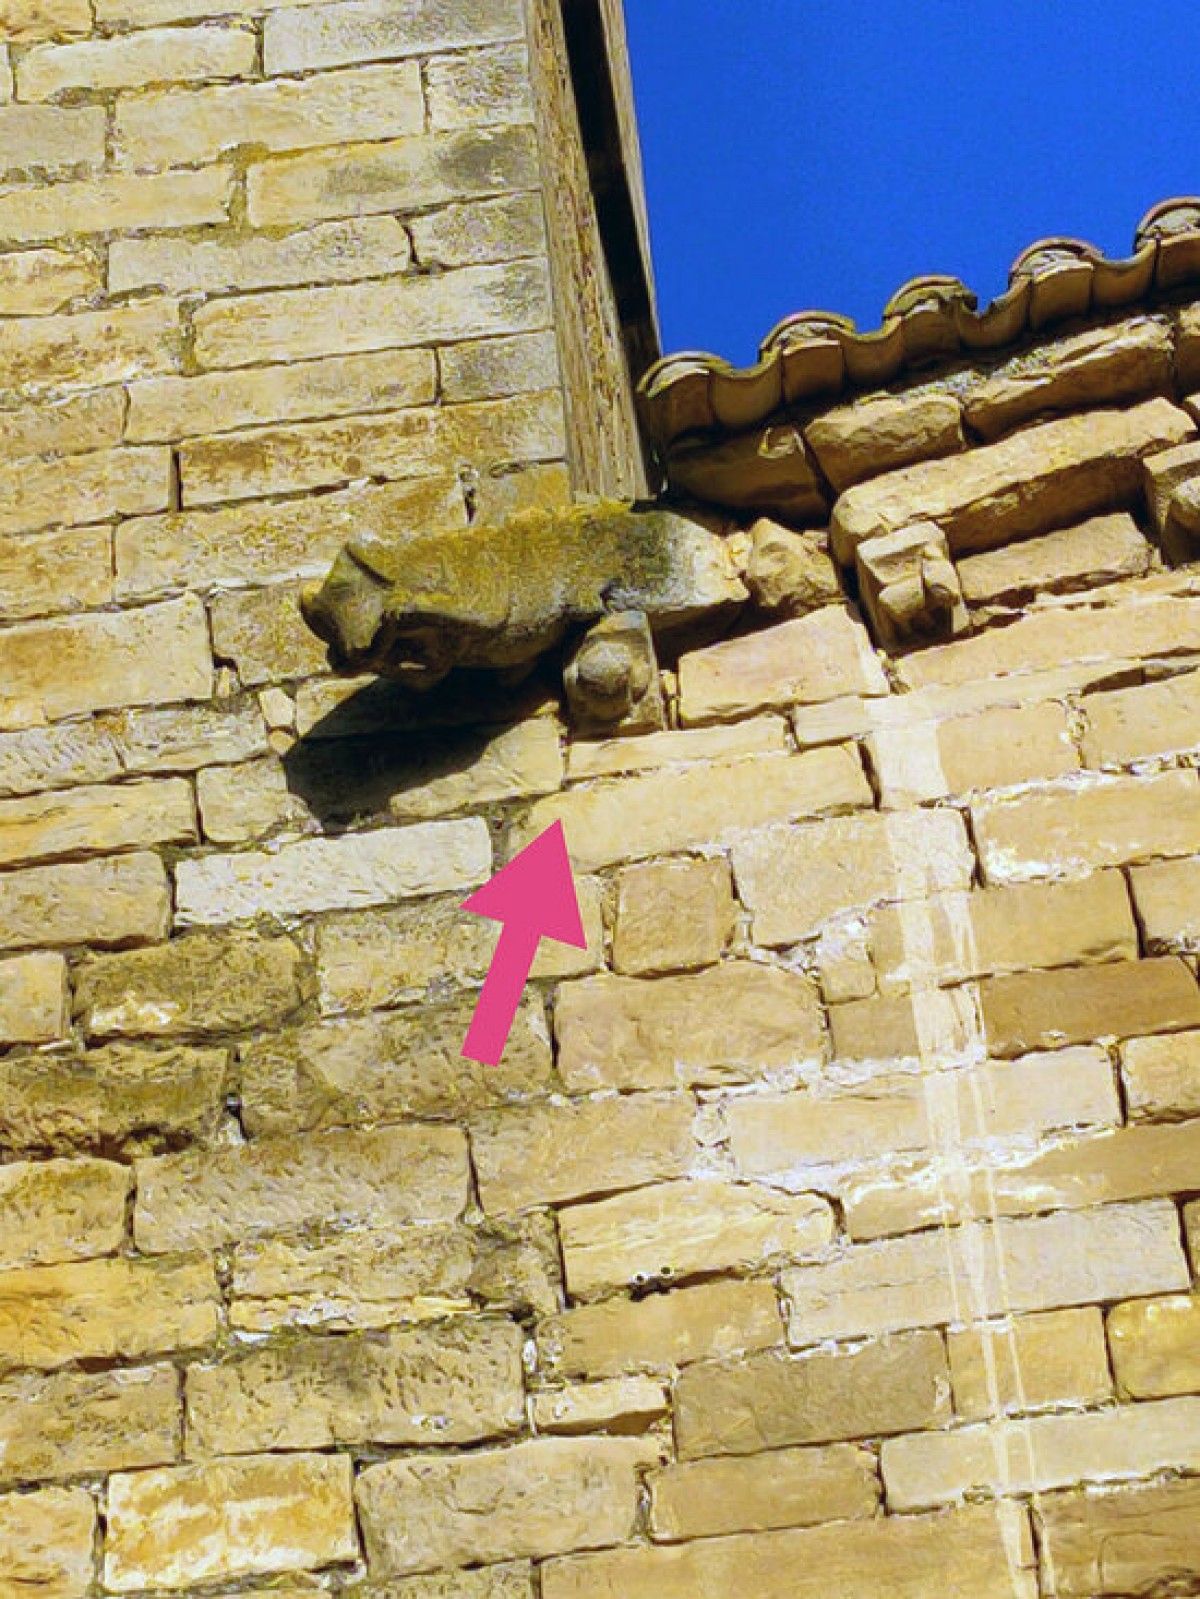 Pla mitjà on es poden veure alguns dels problemes estructurals de l'església de Santa Maria de Guimerà que han portat a l'Arquebisbat de Tarragona a tancar-la de forma urgent per seguretat.